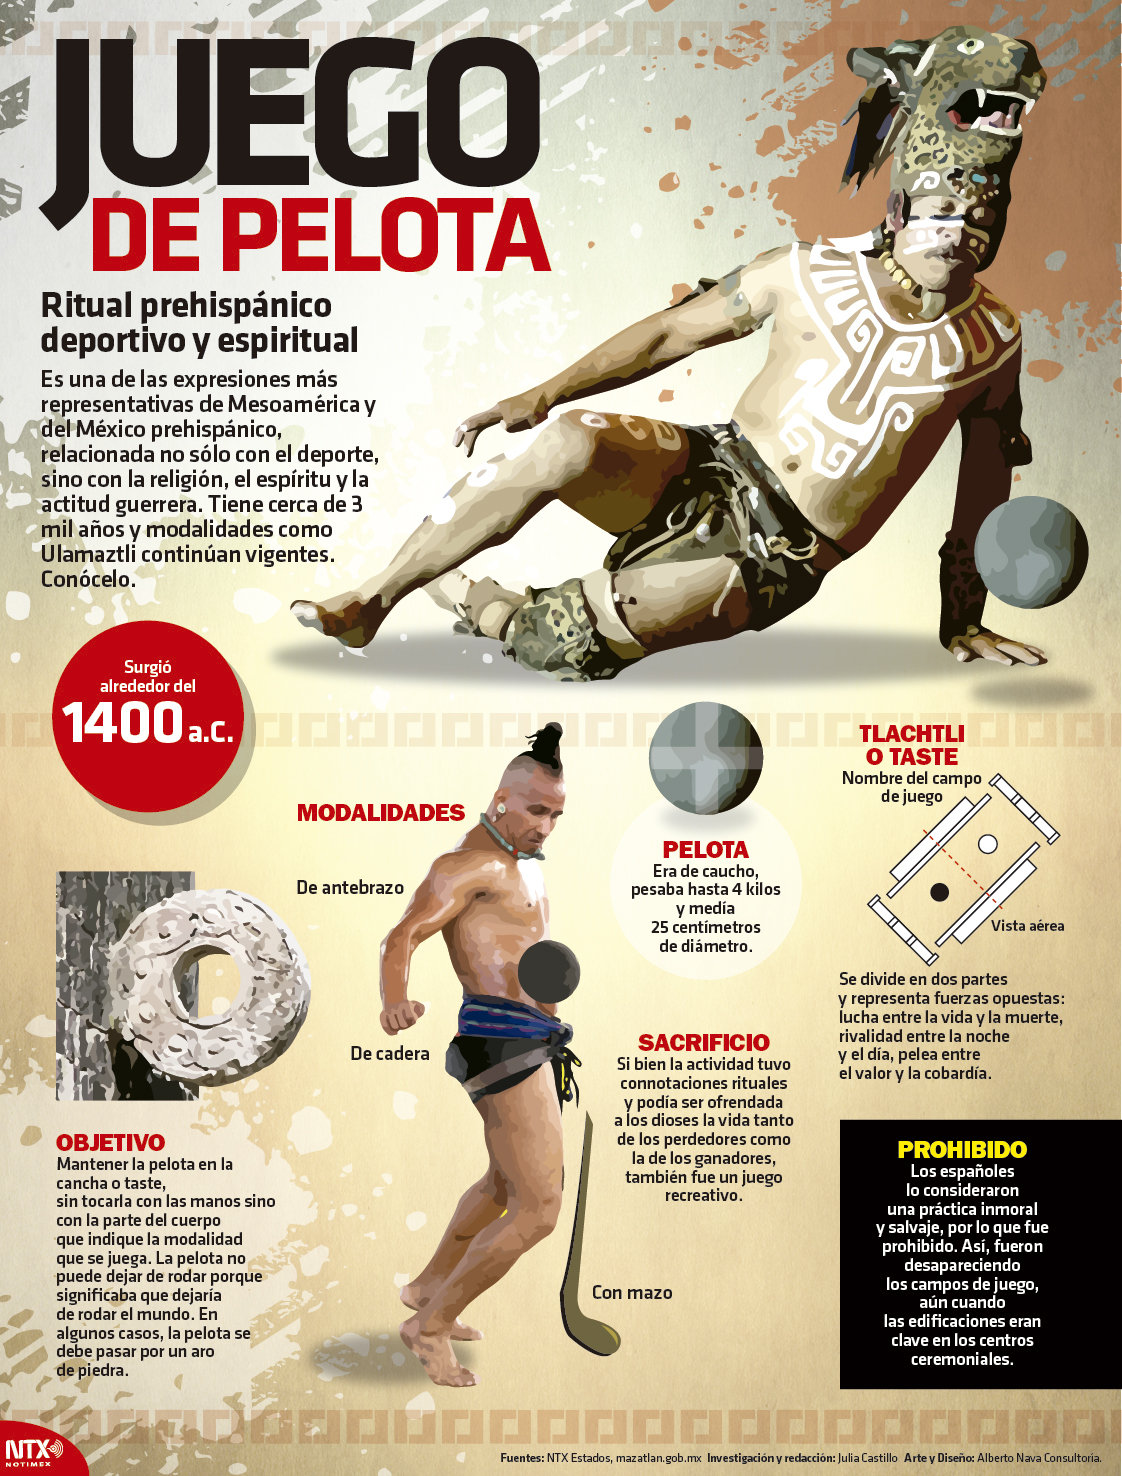 Hoy Tamaulipas - Infografía: Juego de pelota, ritual prehispánico